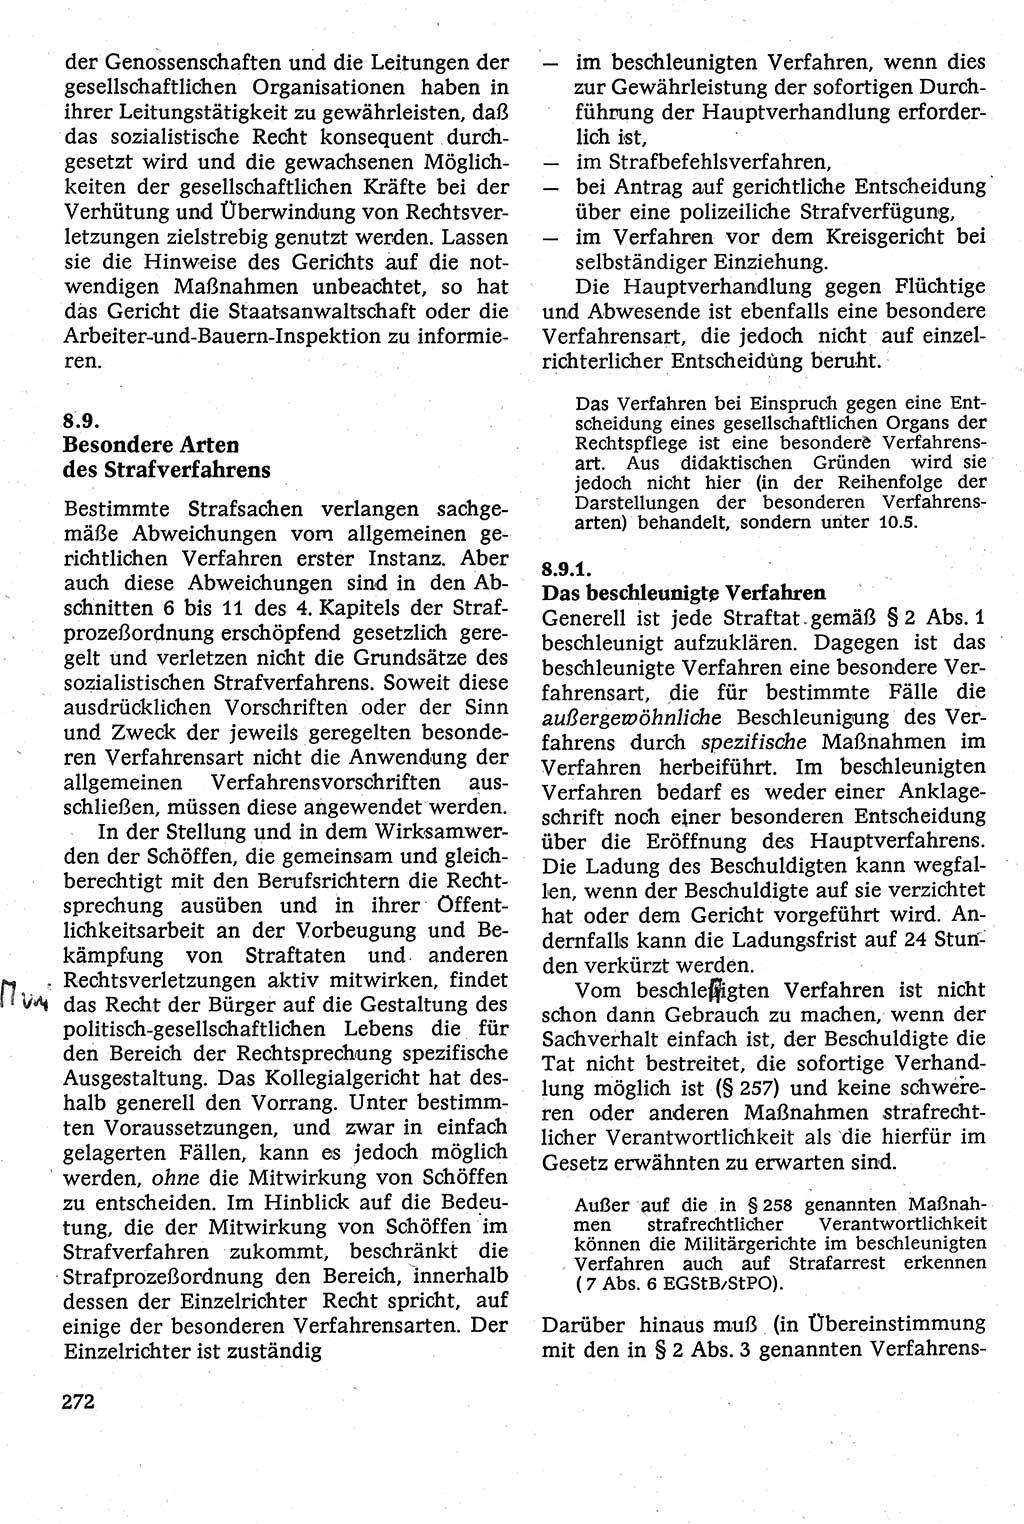 Strafverfahrensrecht [Deutsche Demokratische Republik (DDR)], Lehrbuch 1982, Seite 272 (Strafverf.-R. DDR Lb. 1982, S. 272)